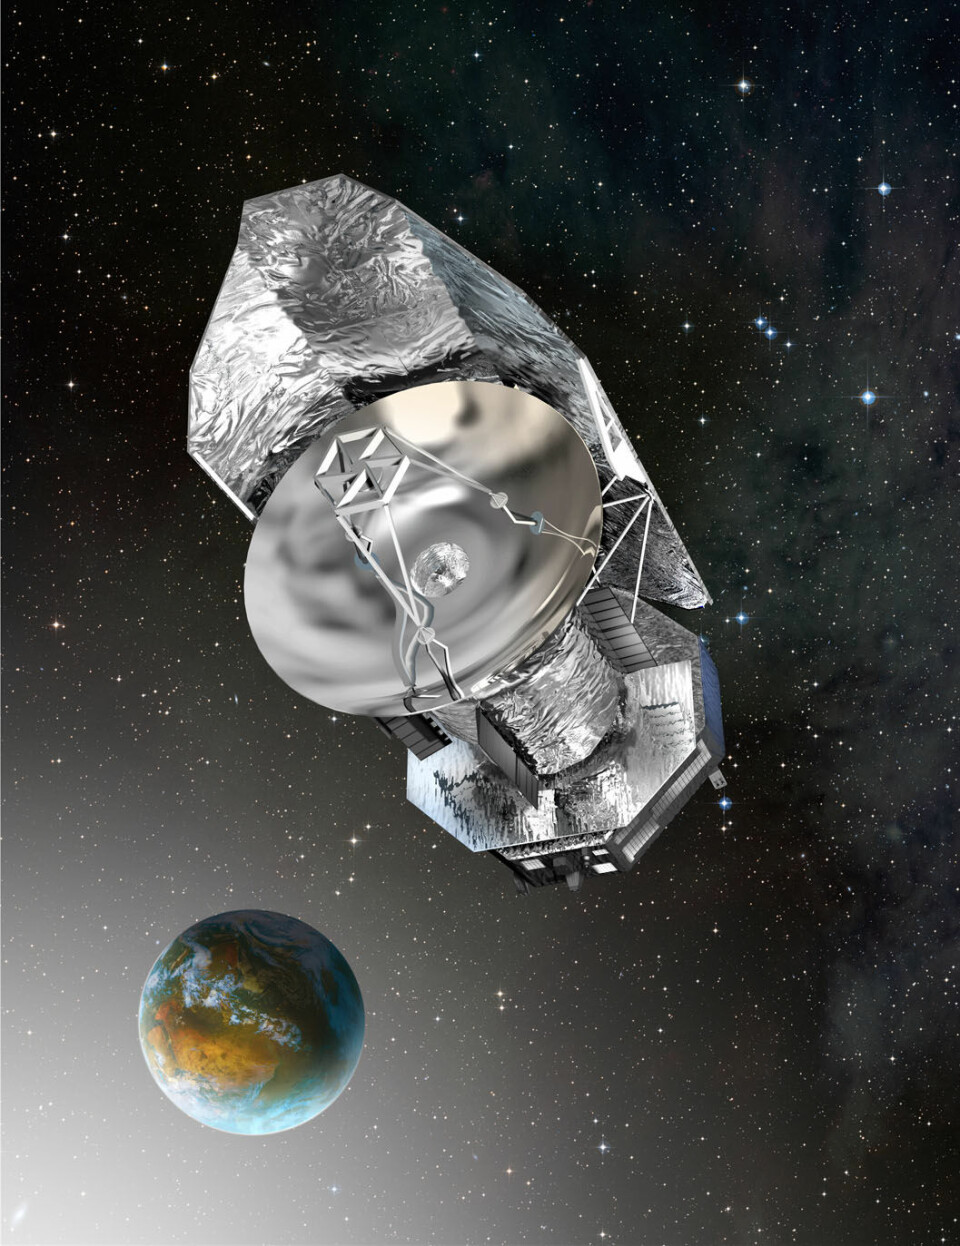 Herschel flyr i en bane 1, 5 millioner km fra jorda. (Illustrasjon: ESA)